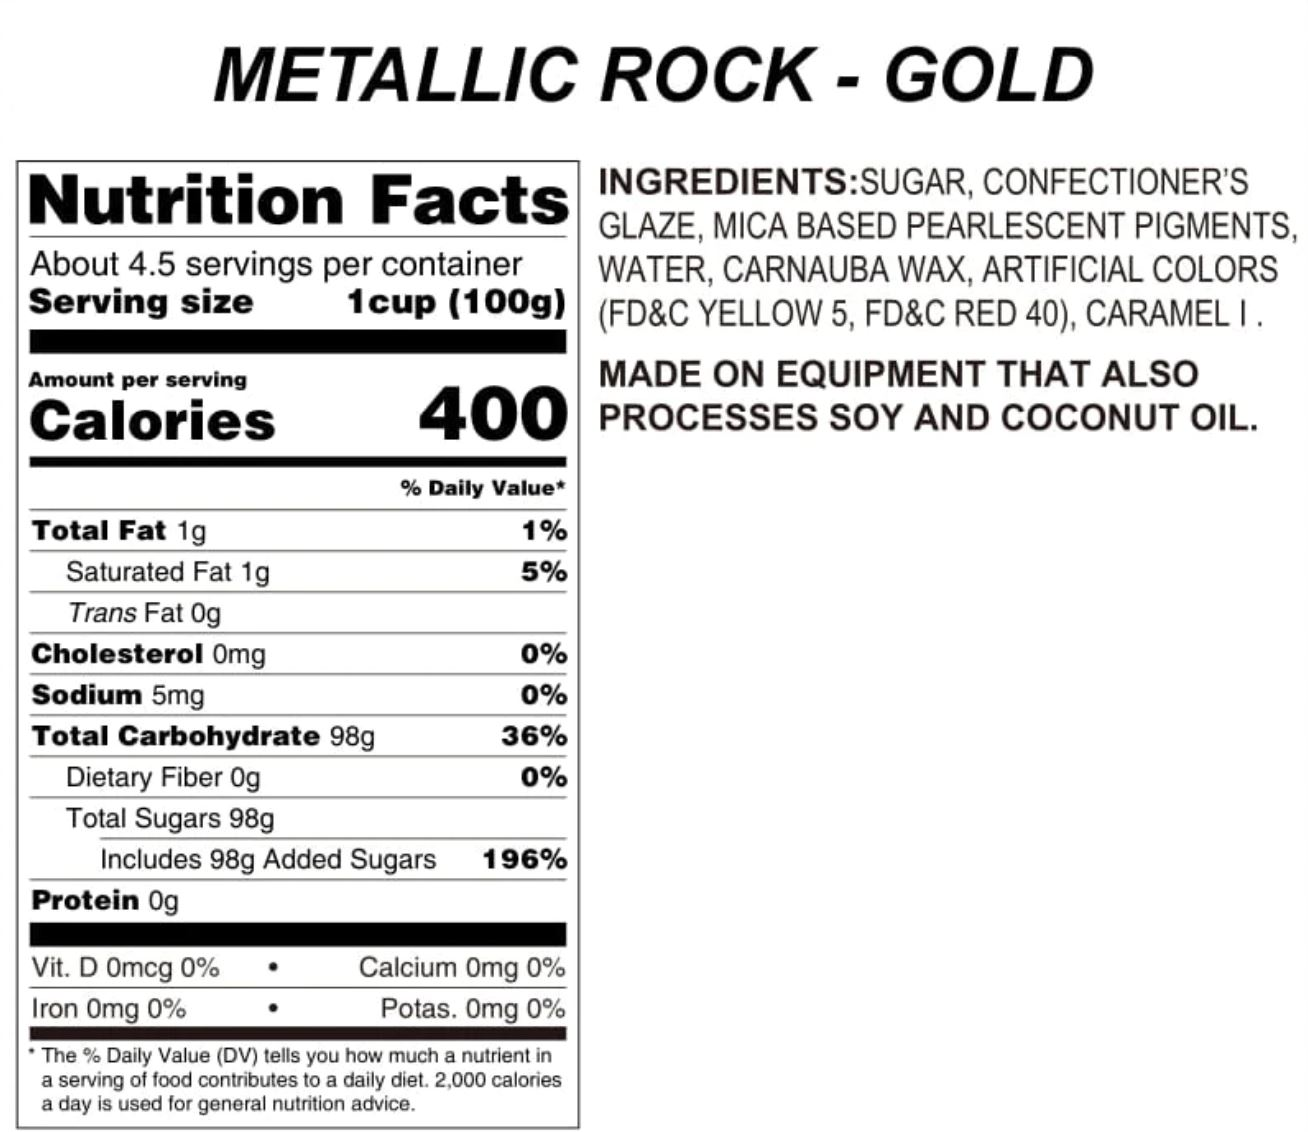 Gold Metallic Rock